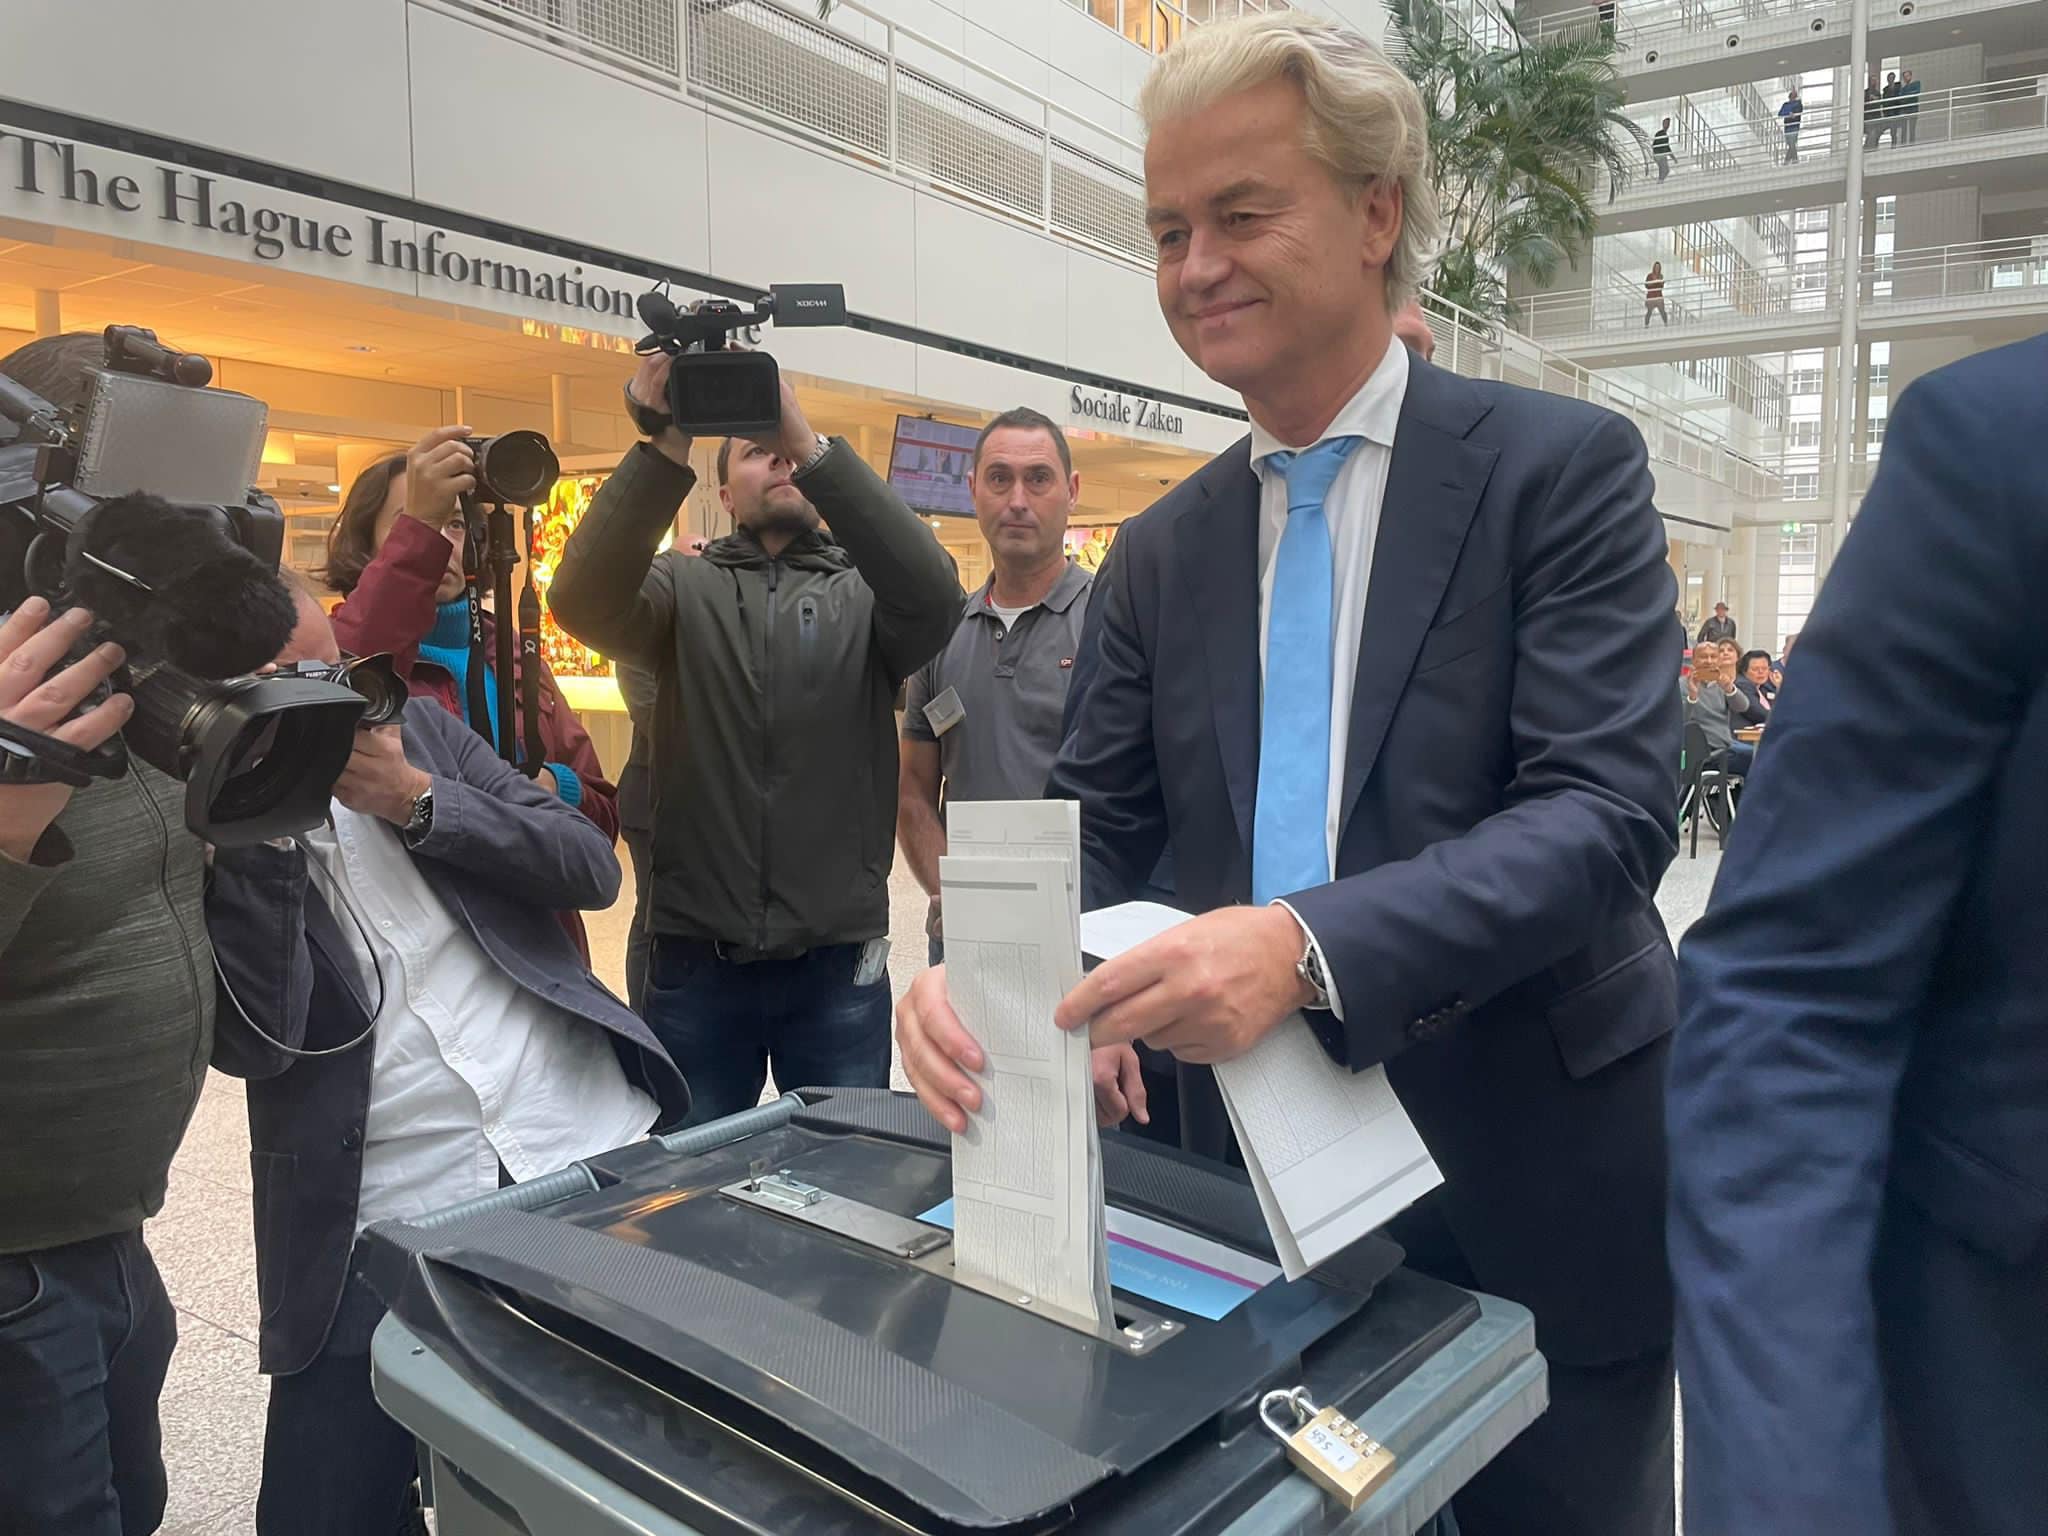 L’Olanda vira a destra: vince il leader estremista Wilders, ma formare il governo non sarà facile